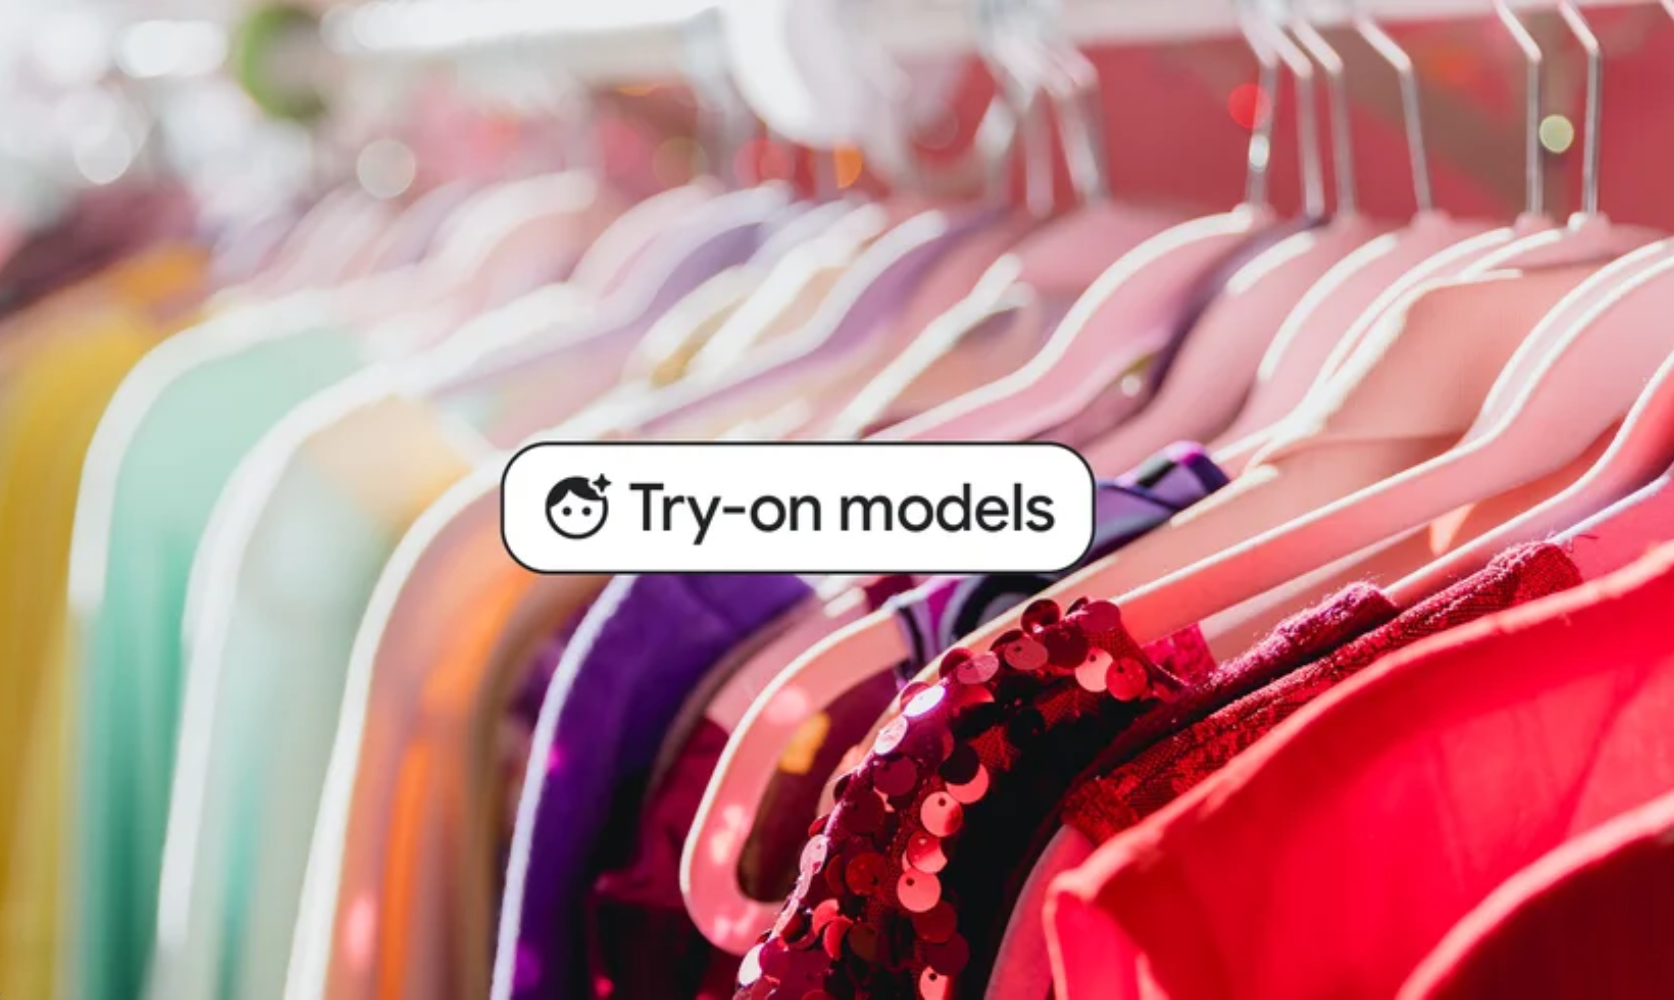 Google lanza un nuevo probador virtual de ropa basado en IA